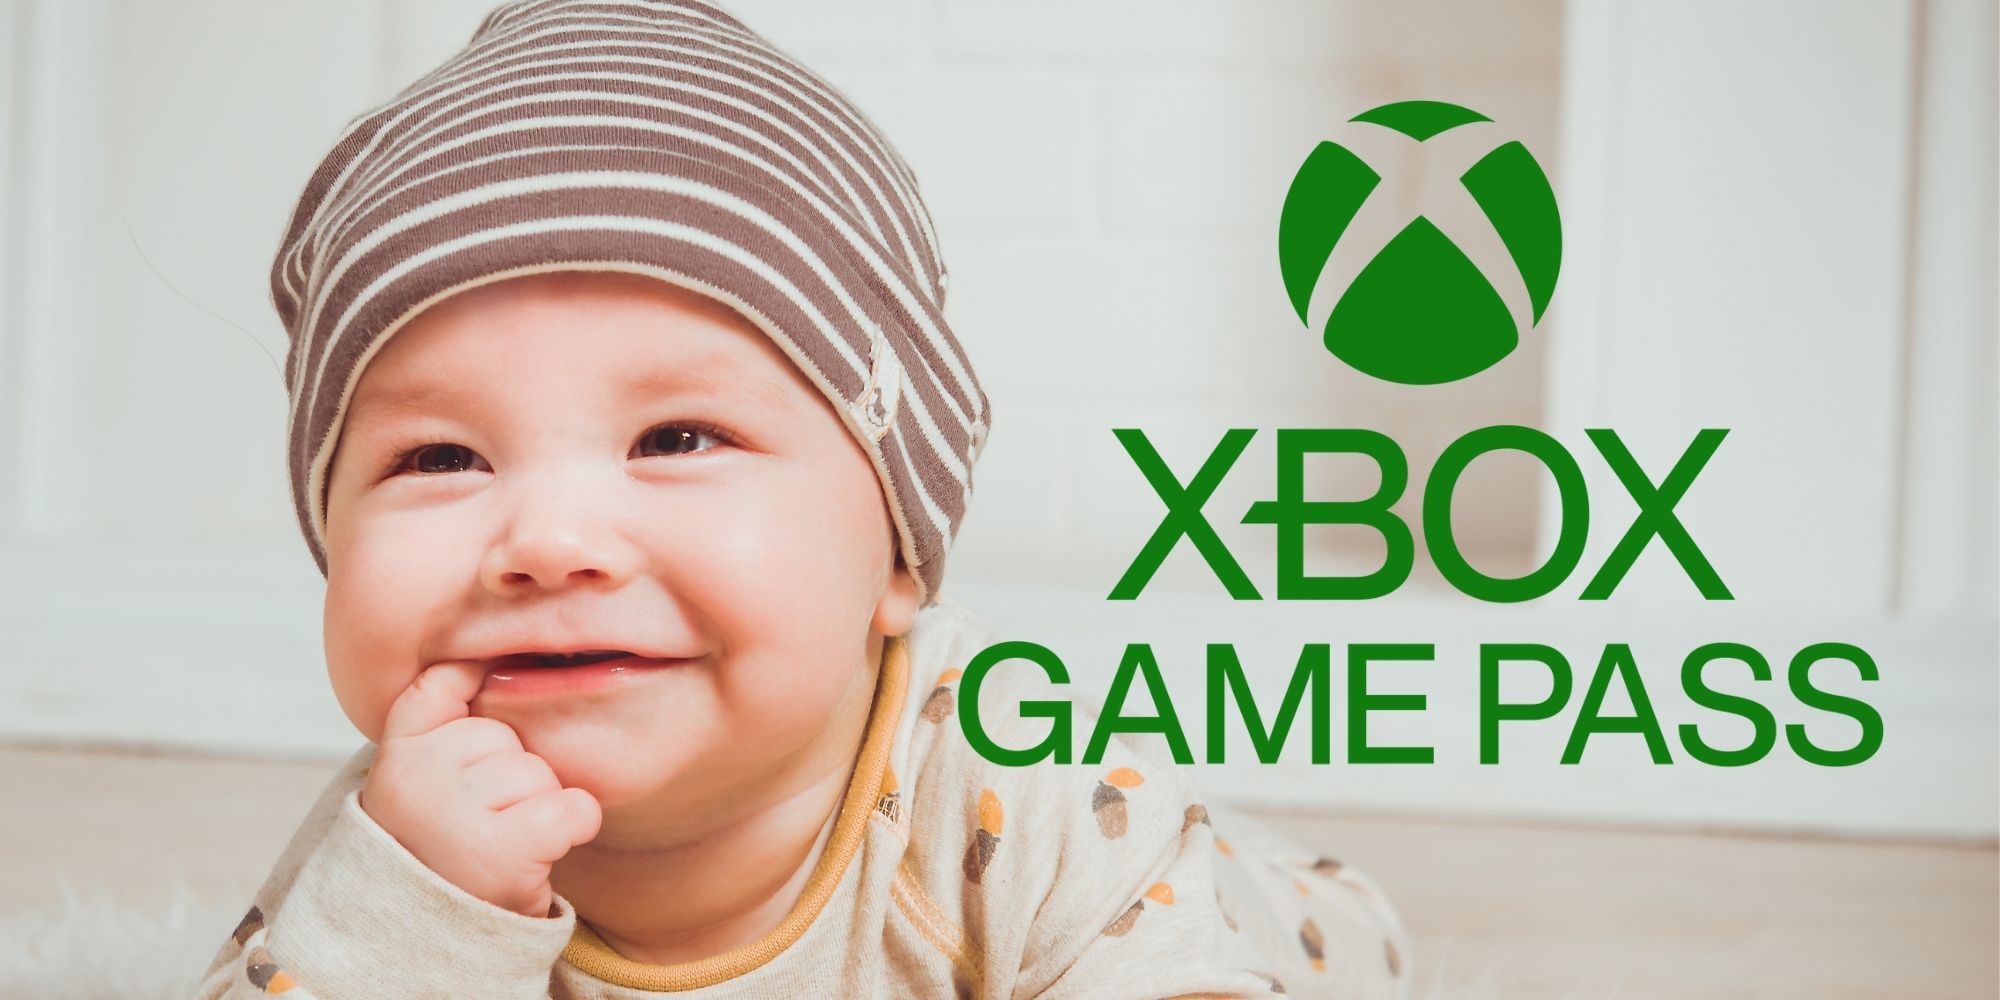 xbox-game-pass-baby